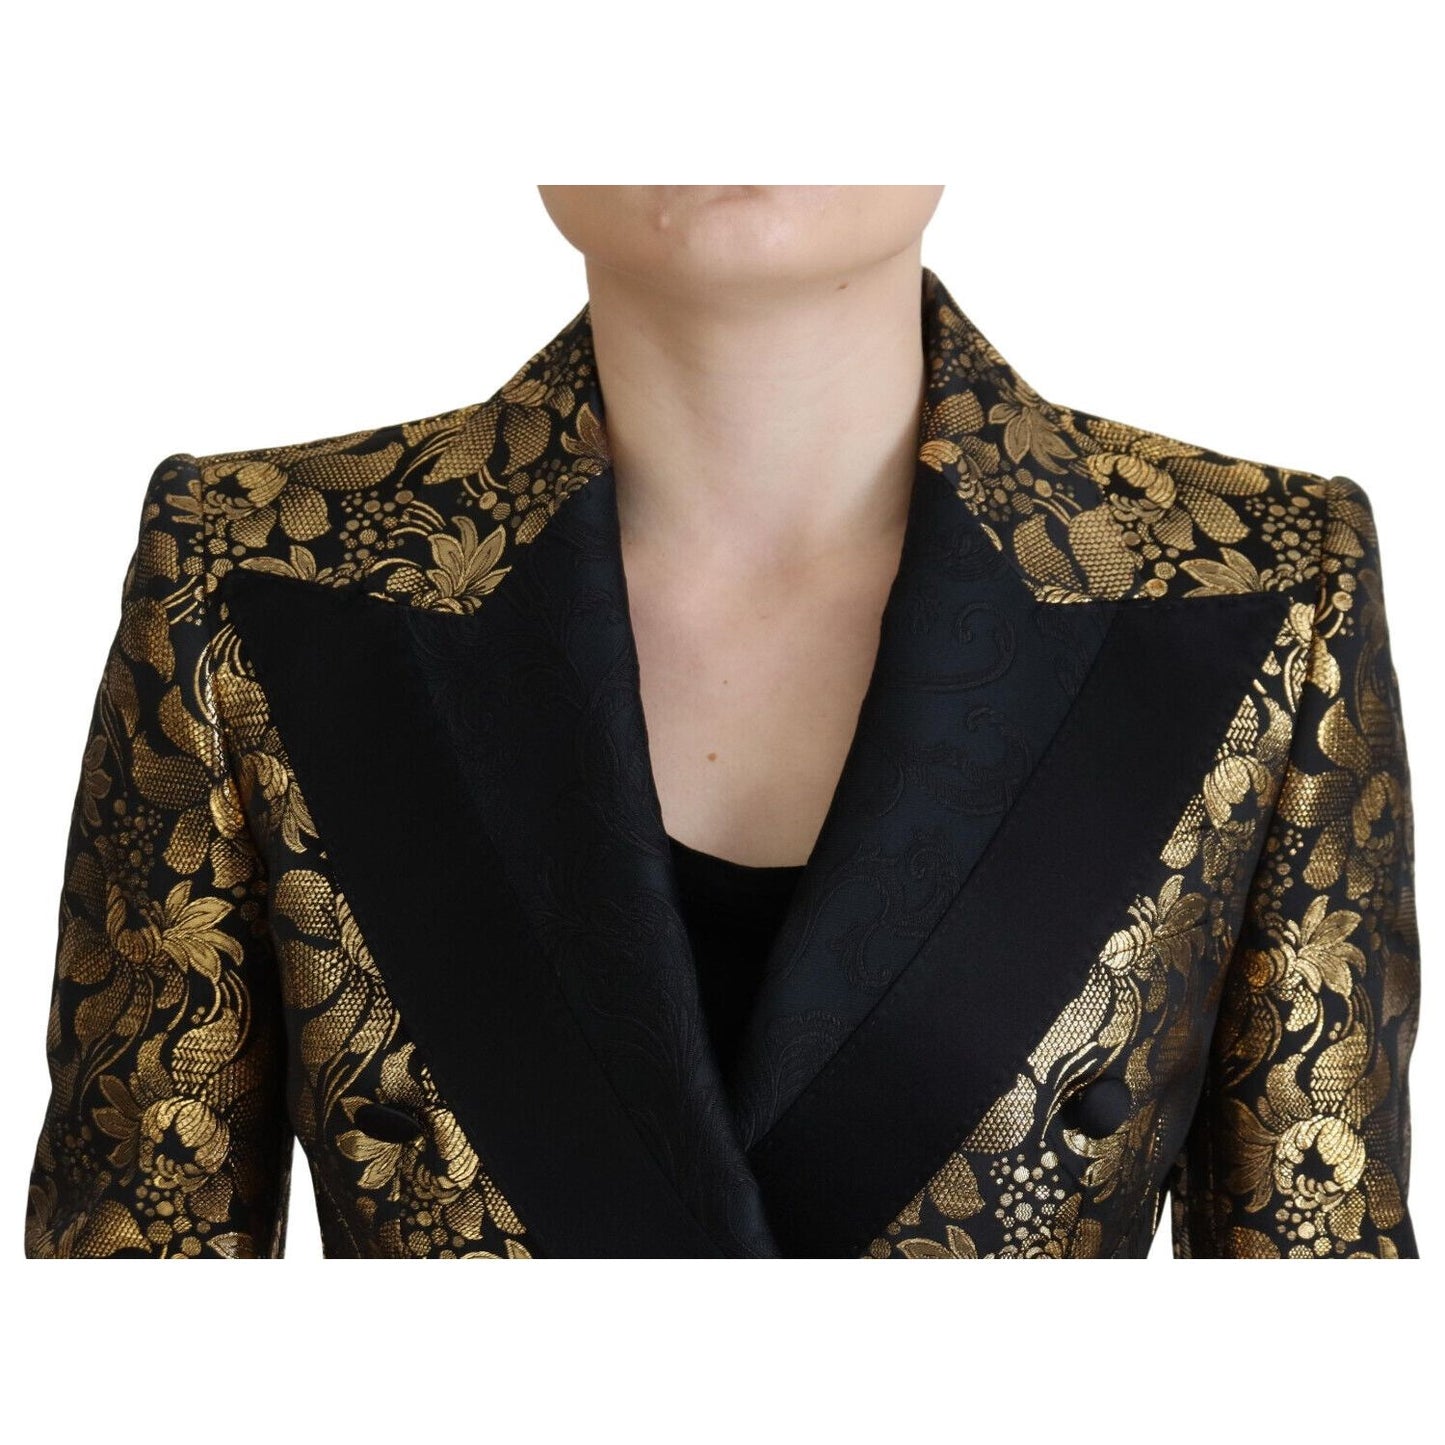 Dolce & Gabbana Elegant Black and Gold Floral Jacket black-gold-jacquard-coat-blazer-jacket